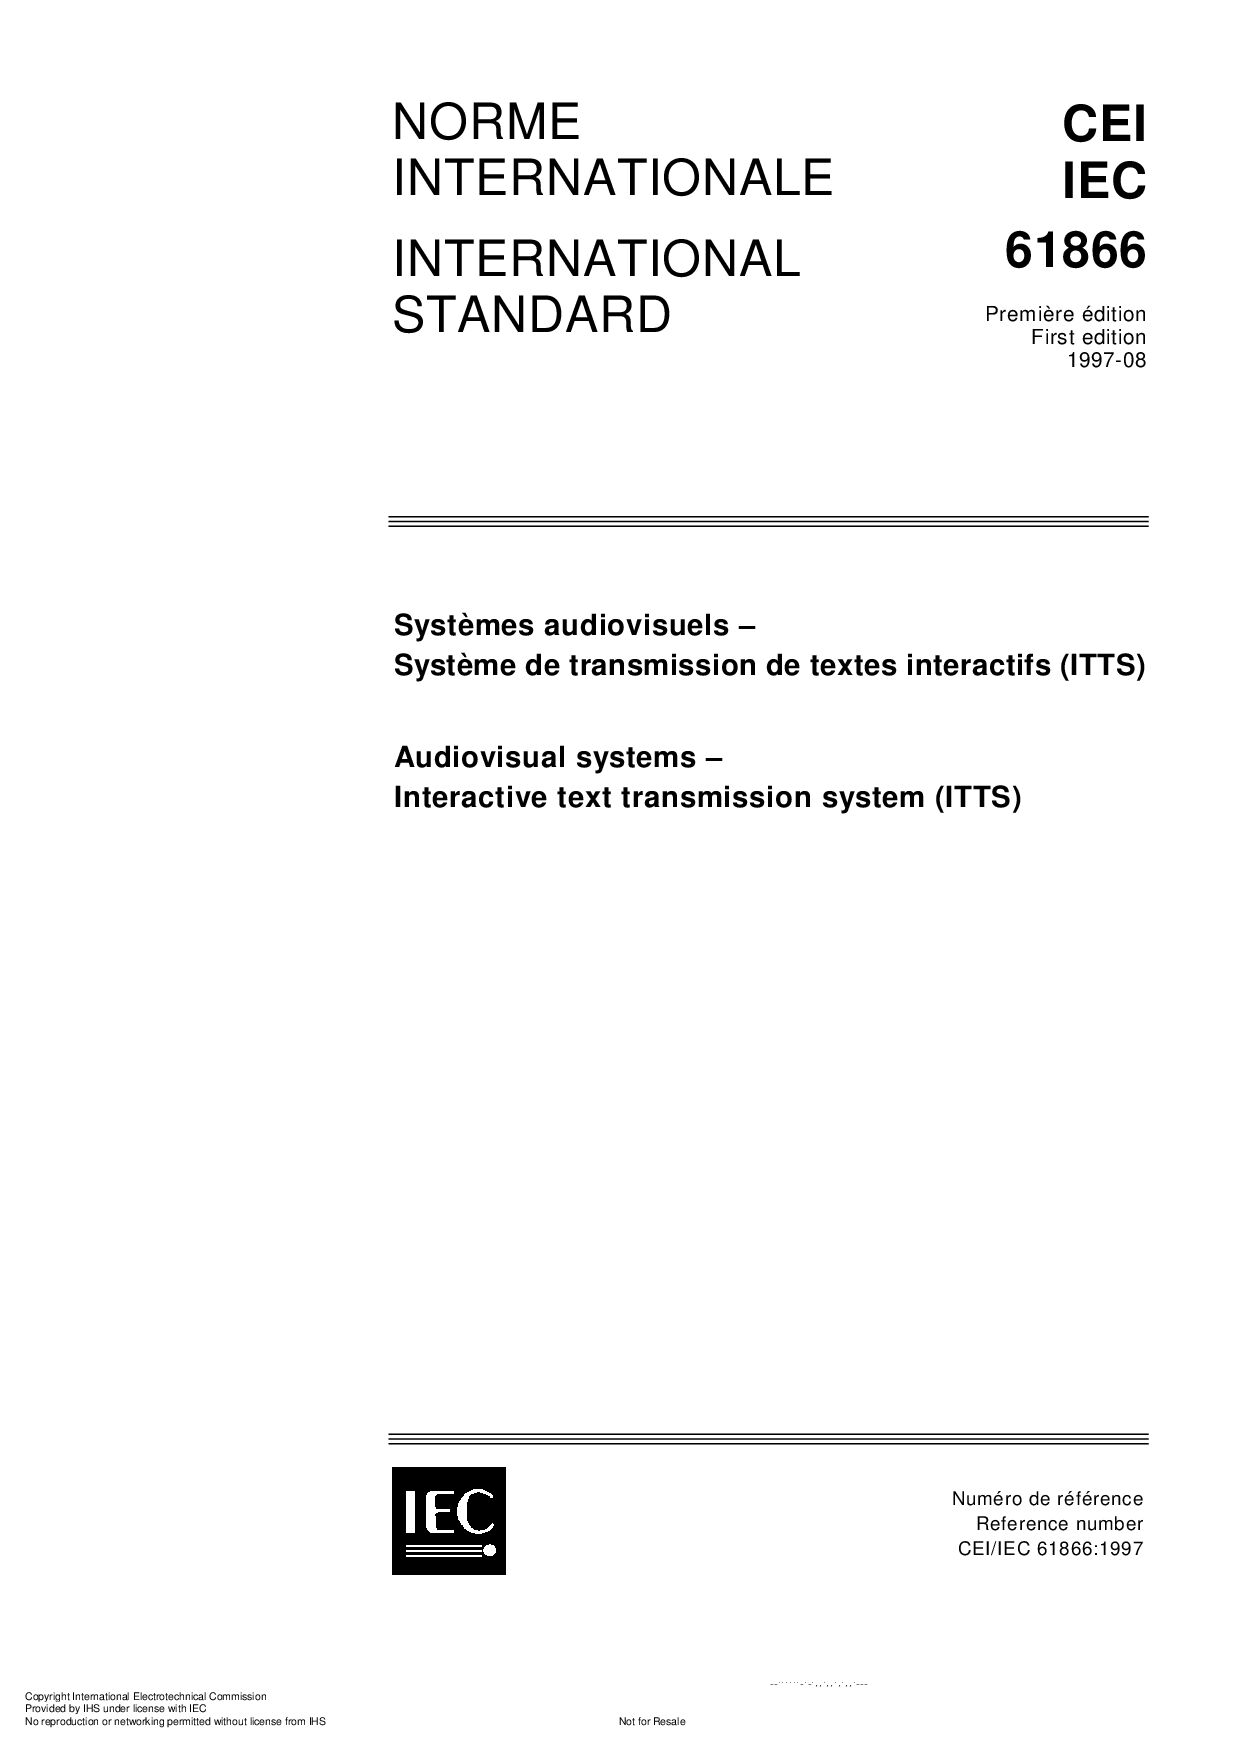 IEC 61866-1997